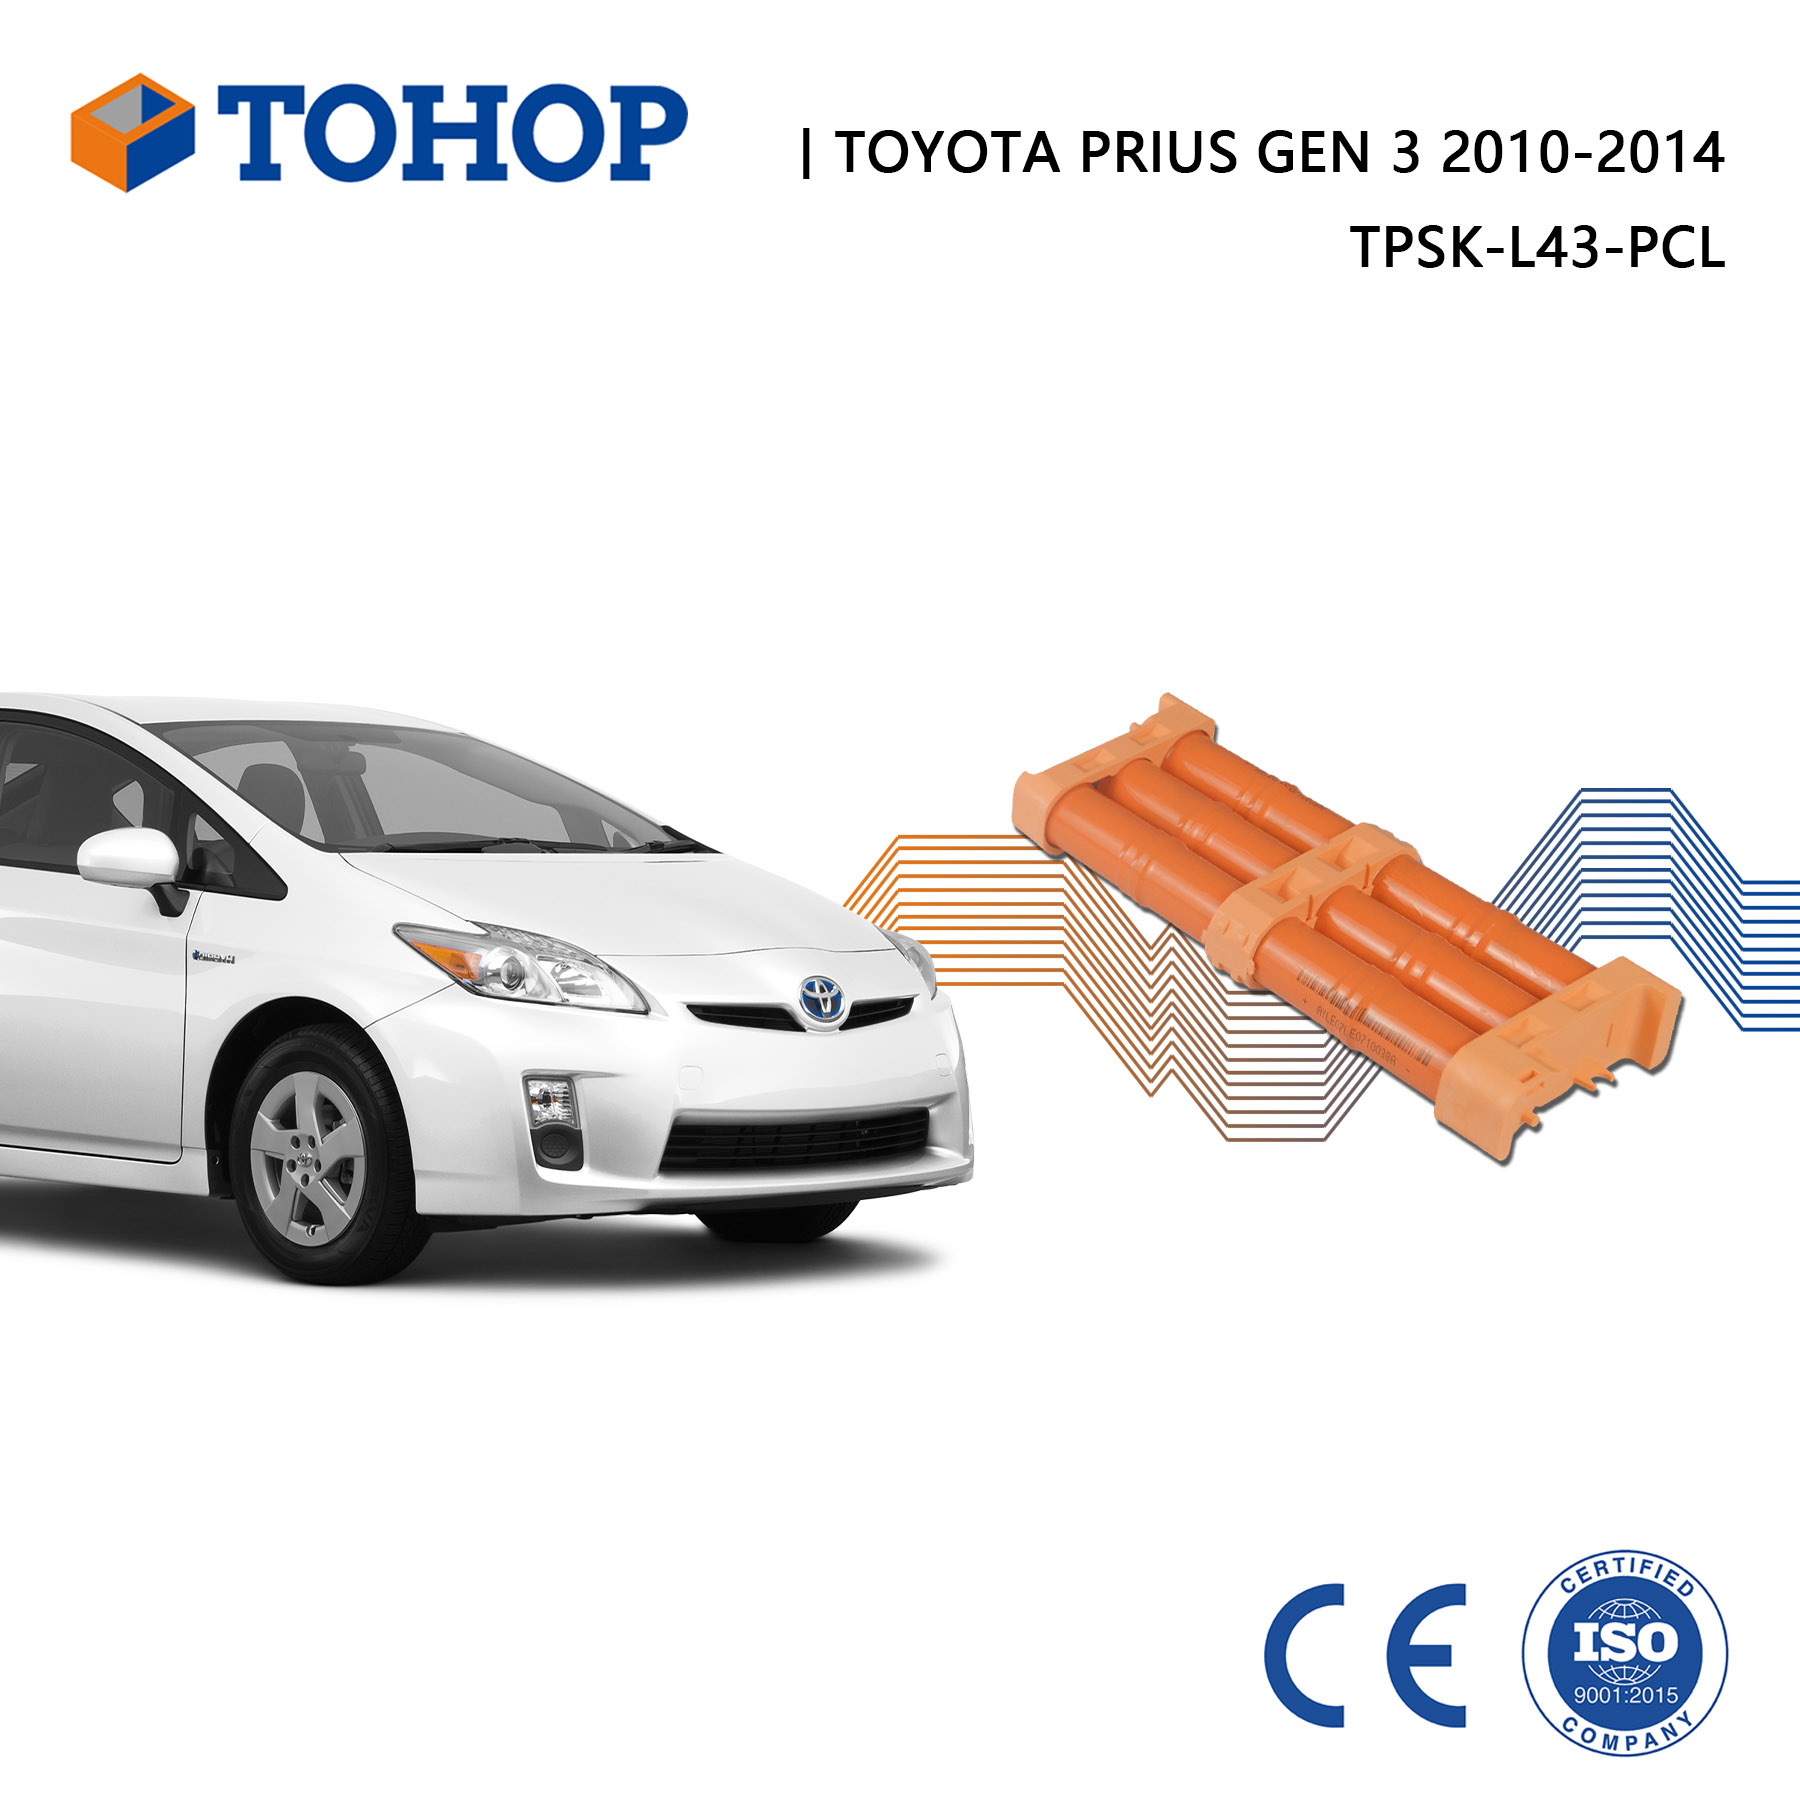 201,6 V / 6,5 Ah, gute Qualität, Ersatz-Hybrid-Autobatterie für Toyota Prius